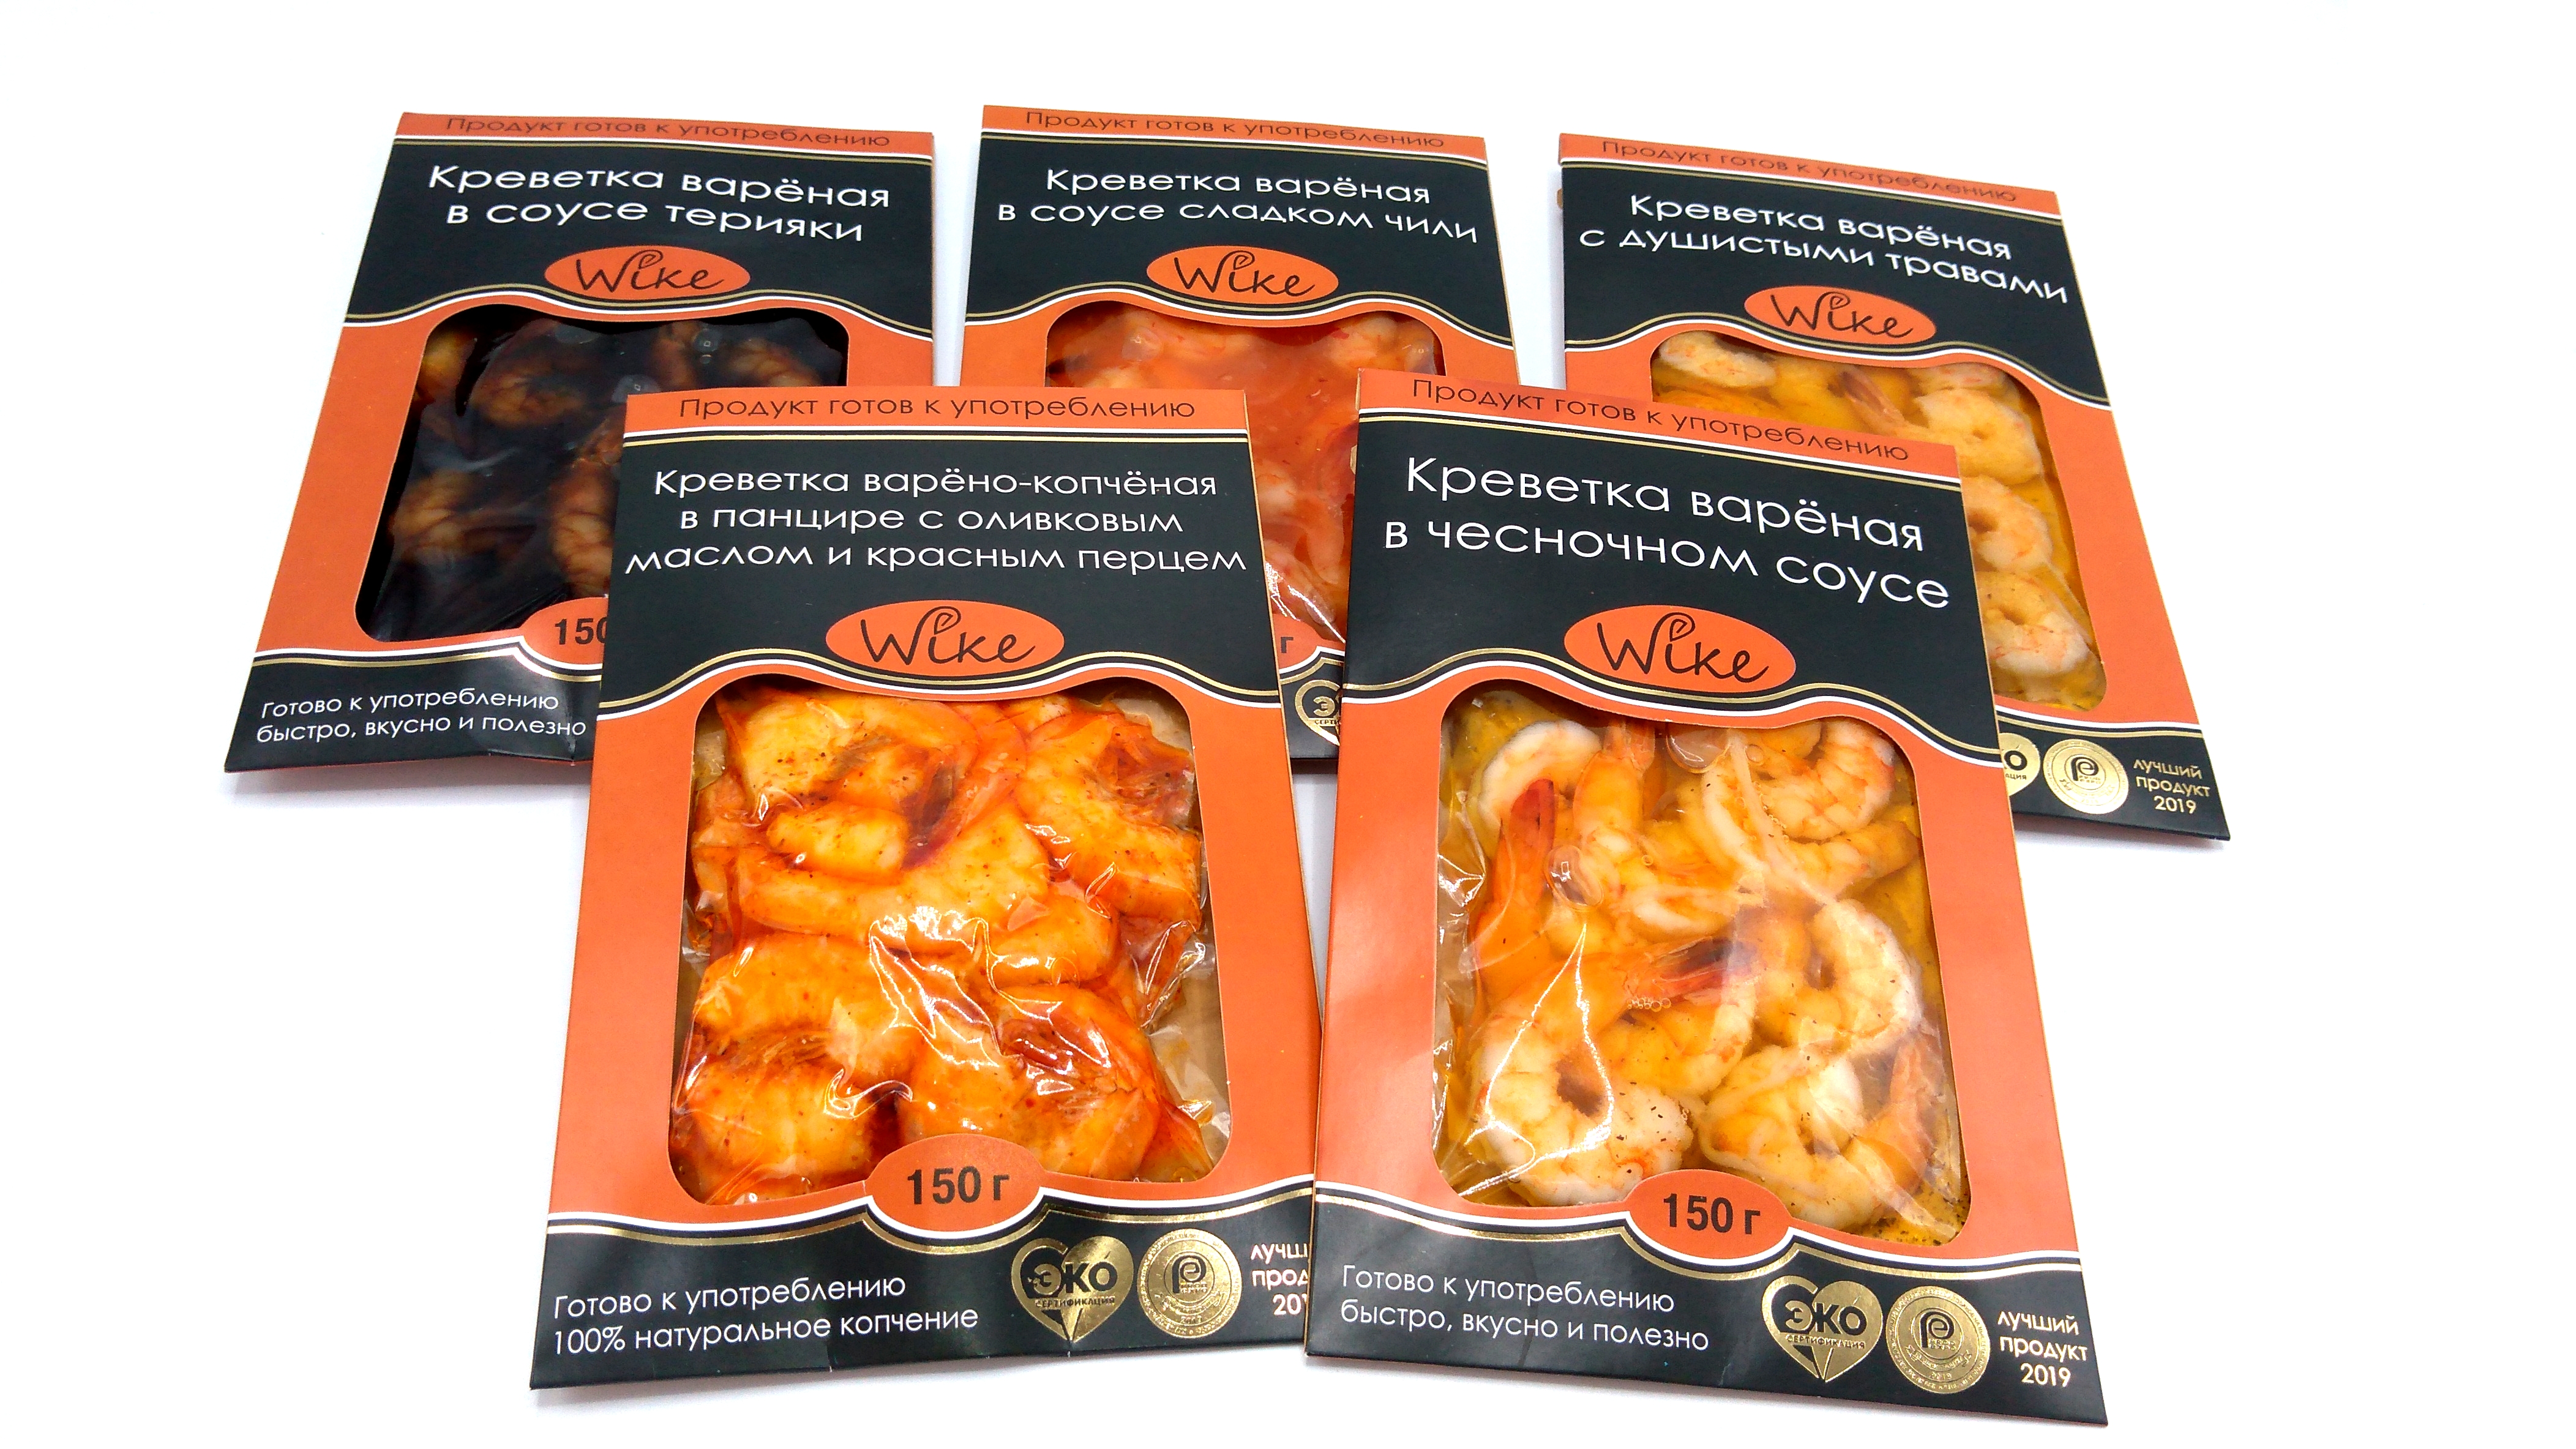 Креветки варёные в соусе упаковка 150г, пять видов